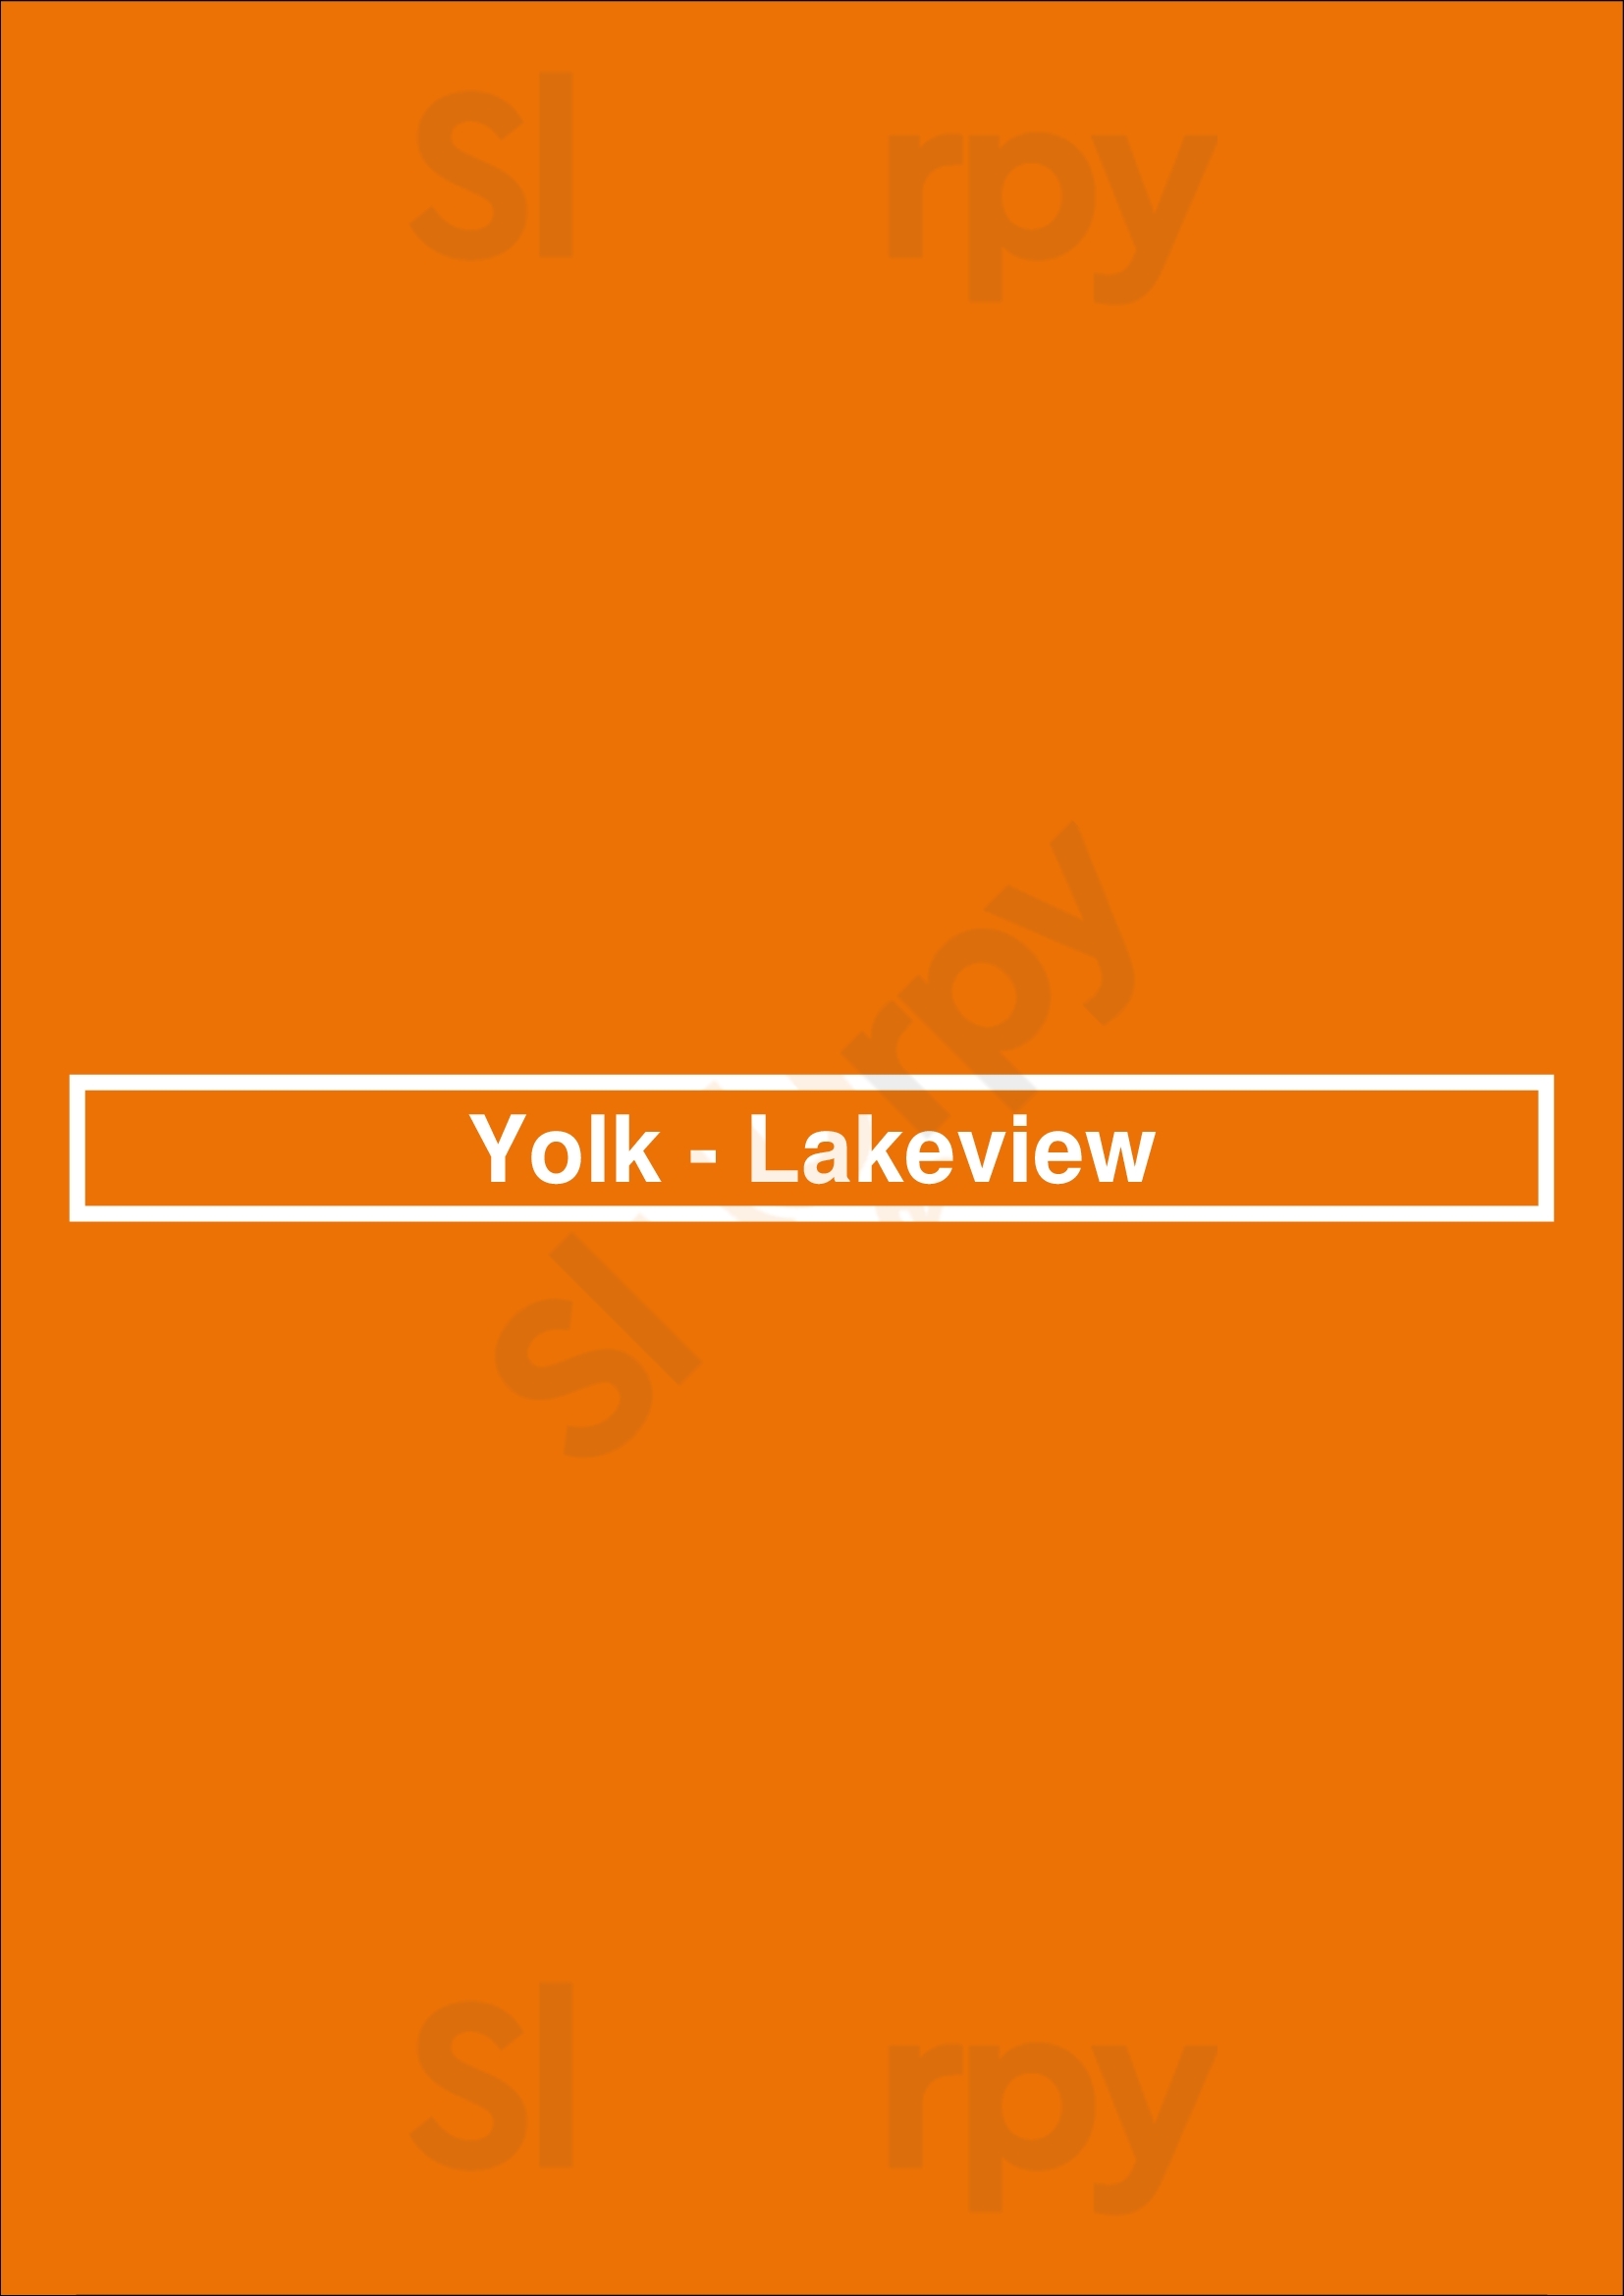 Yolk - Lakeview Chicago Menu - 1